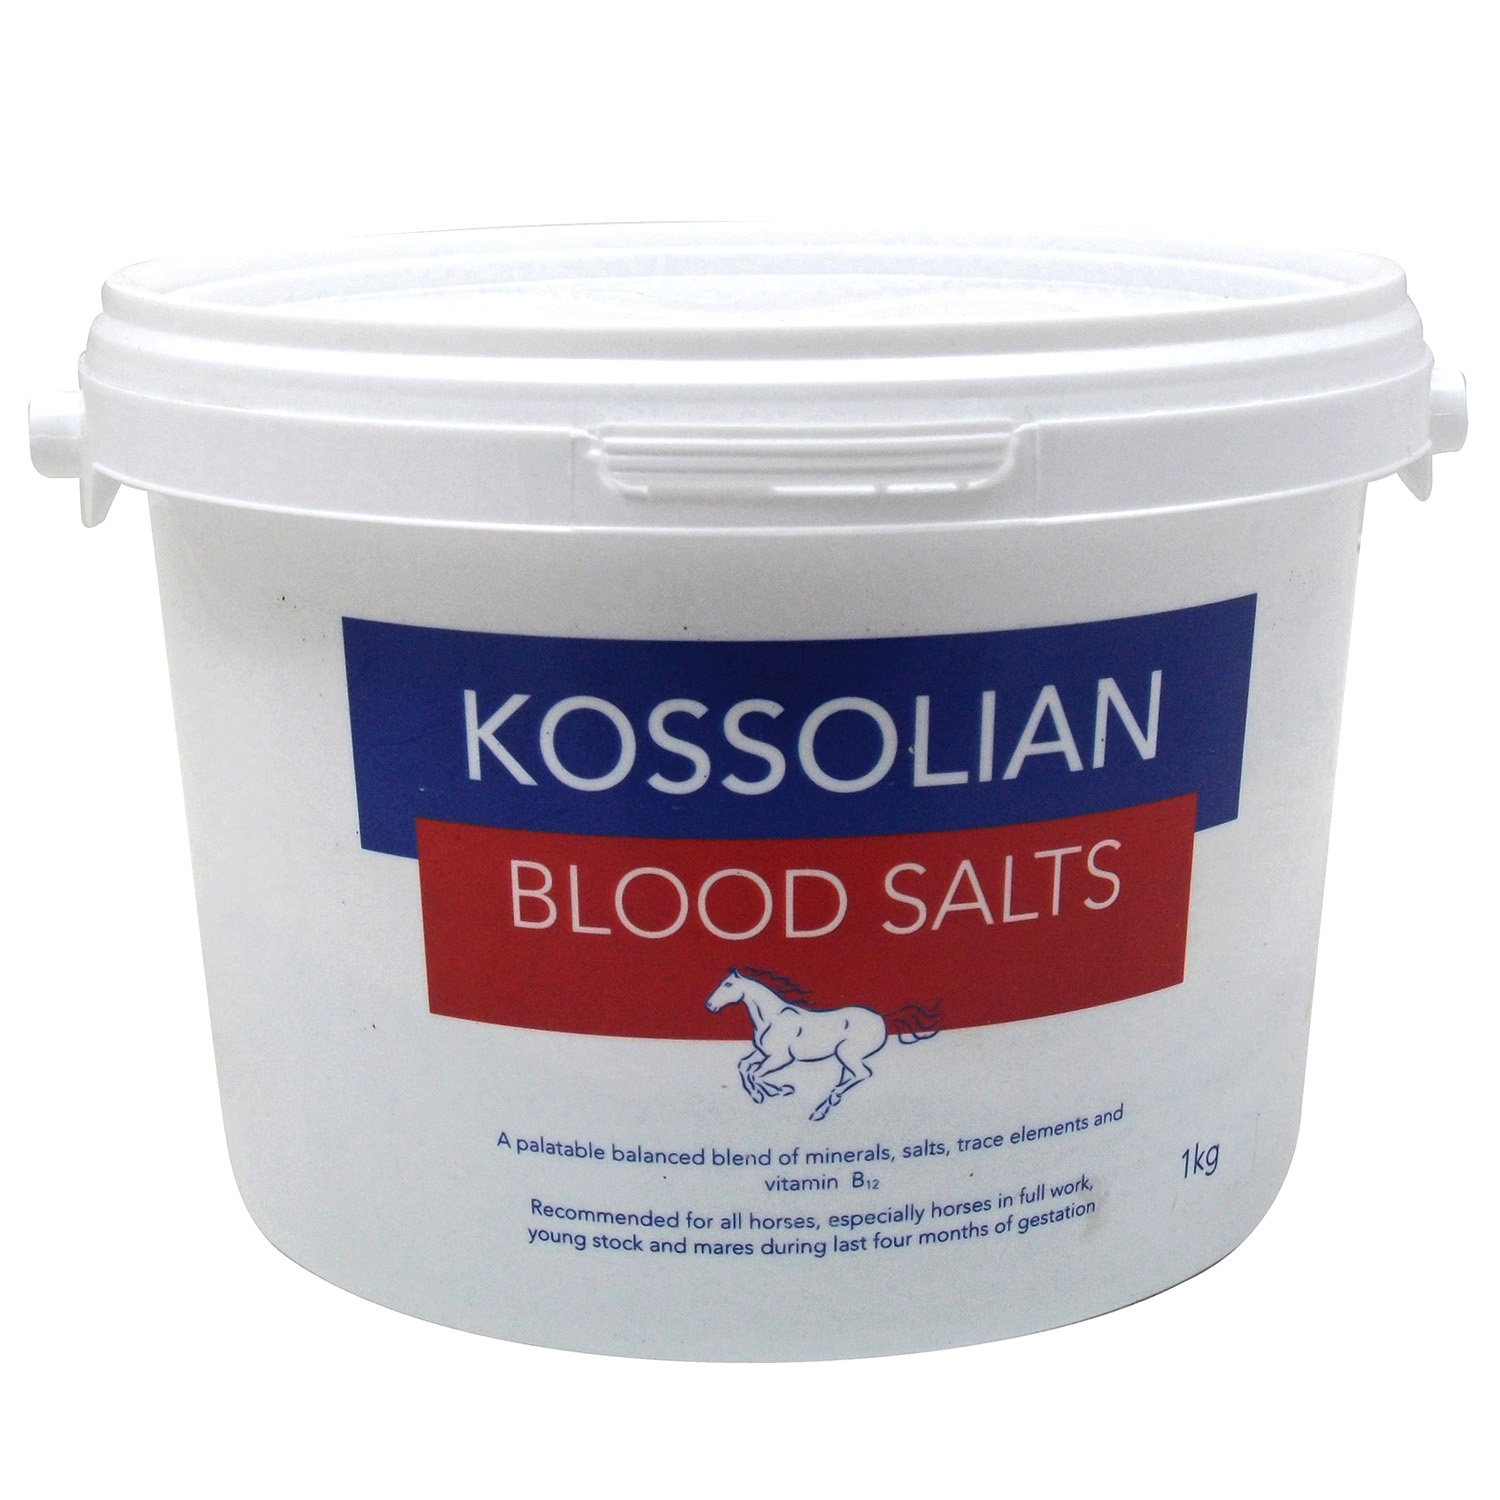 KOSSOLIAN BLOOD SALTS KOSSOLIAN BLOOD SALTS 1 KG  1 KG